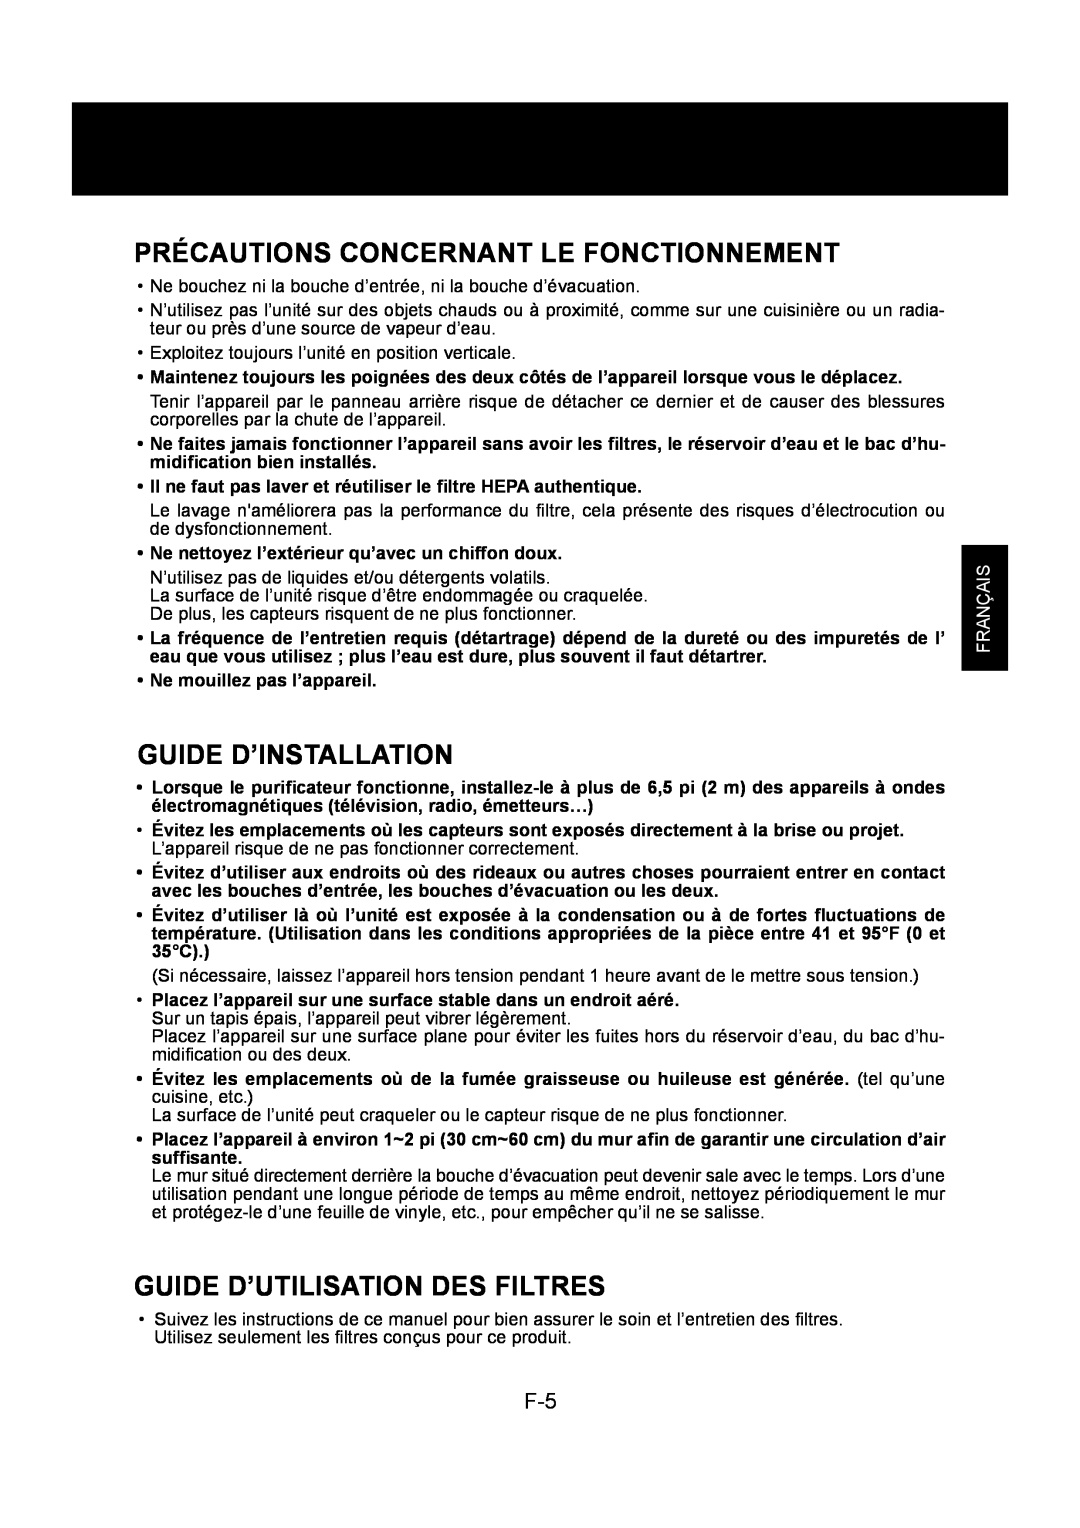 Sharp KC-860U Précautions Concernant Le Fonctionnement, Guide D’Installation, Guide D’Utilisation Des Filtres, Français 